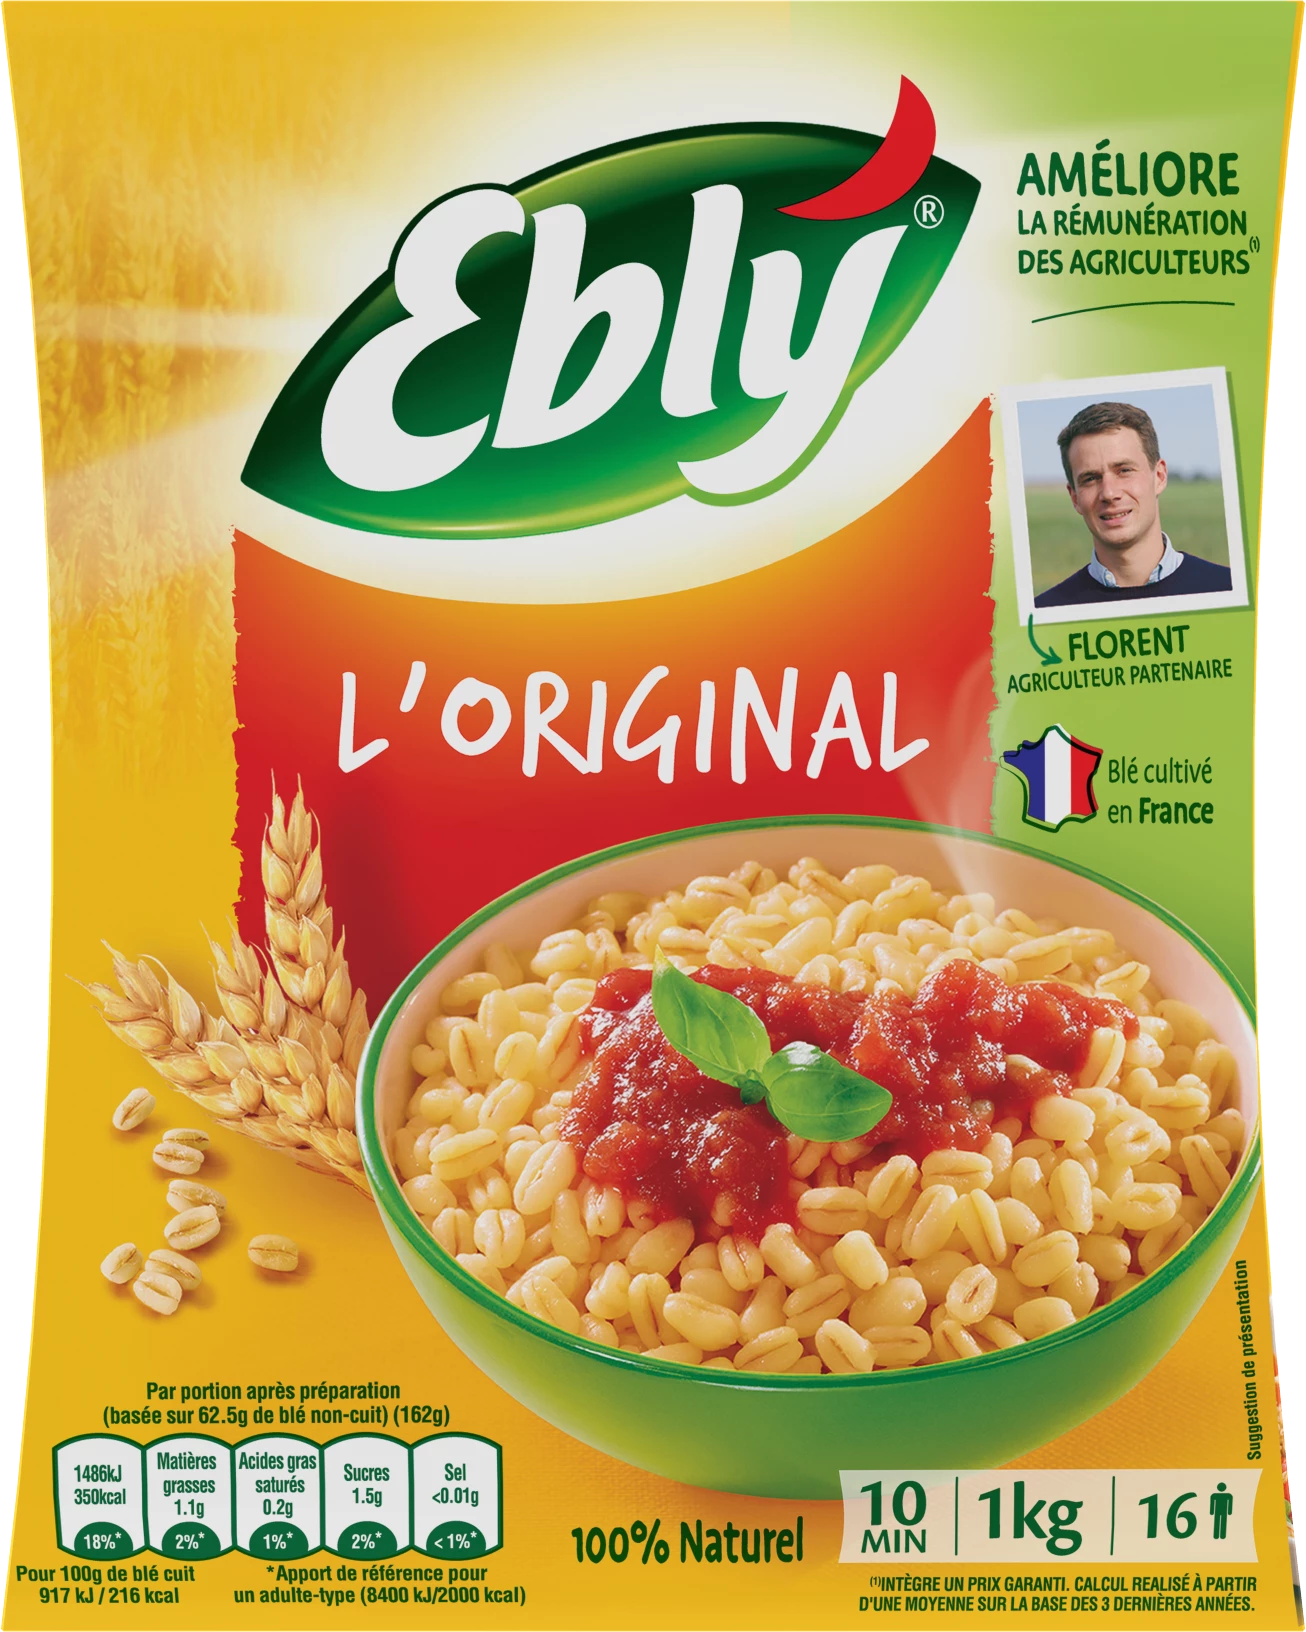 バルク調理済み小麦、1kg - EBLY